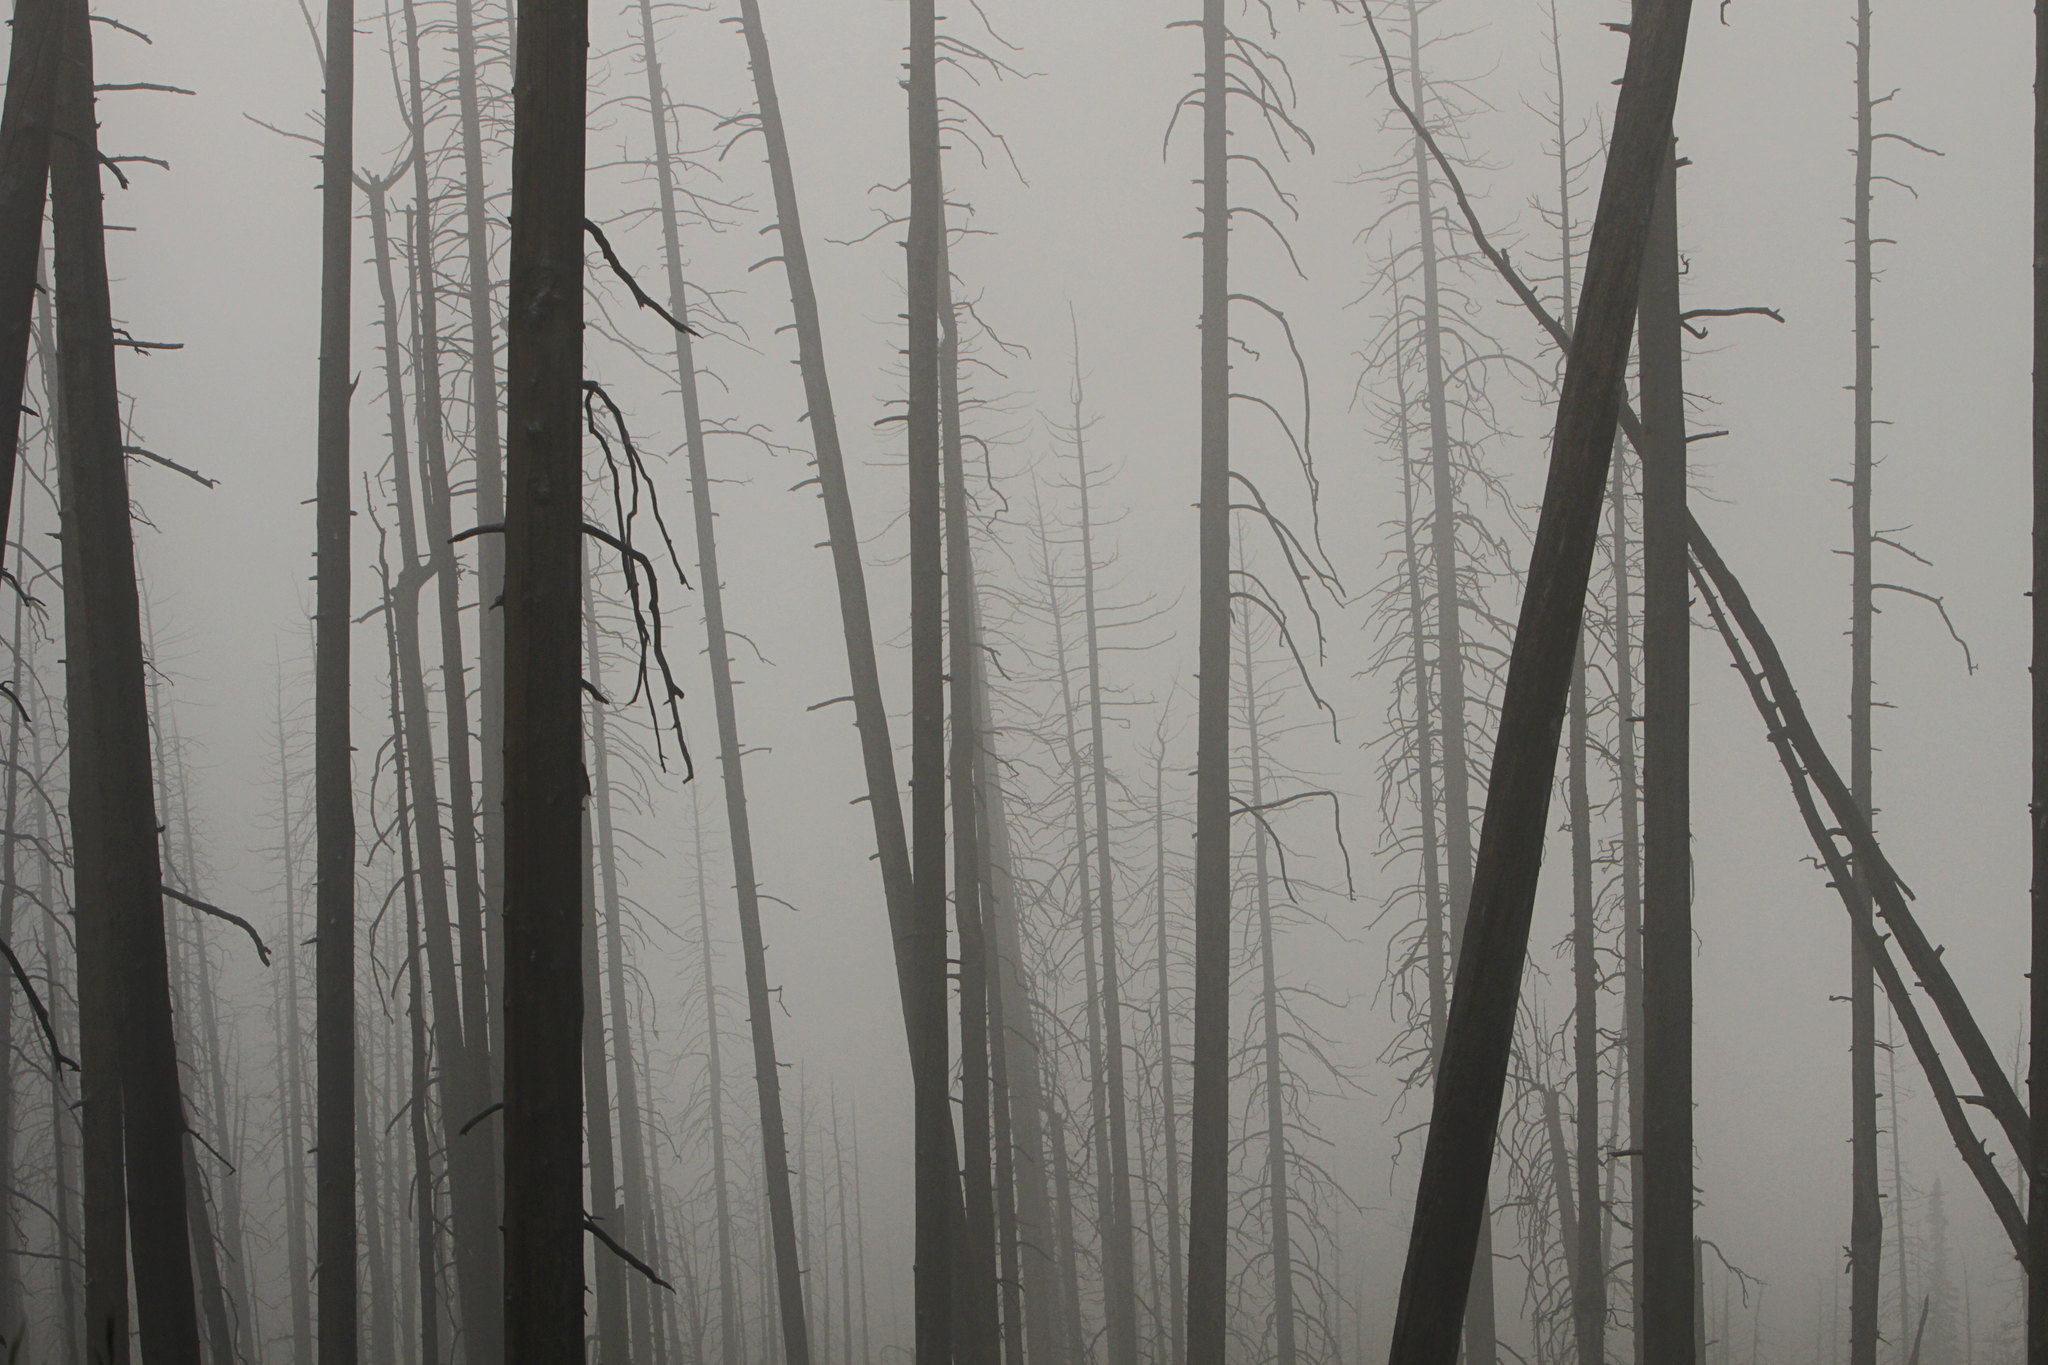 Burned trees in fog